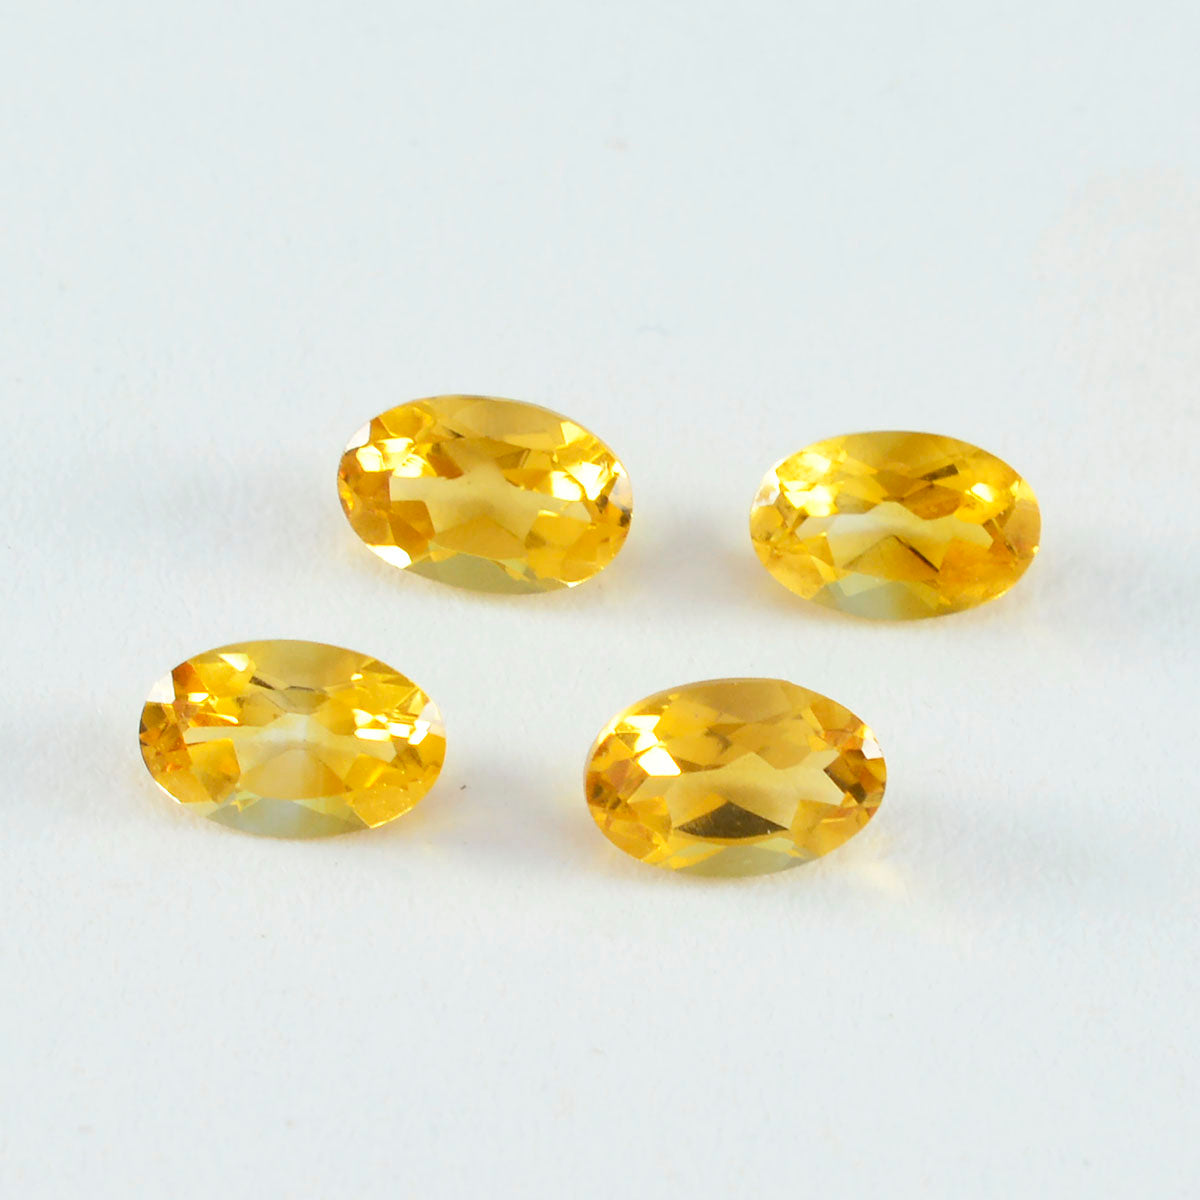 riyogems 1шт настоящий желтый цитрин ограненный 6x8 мм овальной формы привлекательное качество свободный камень